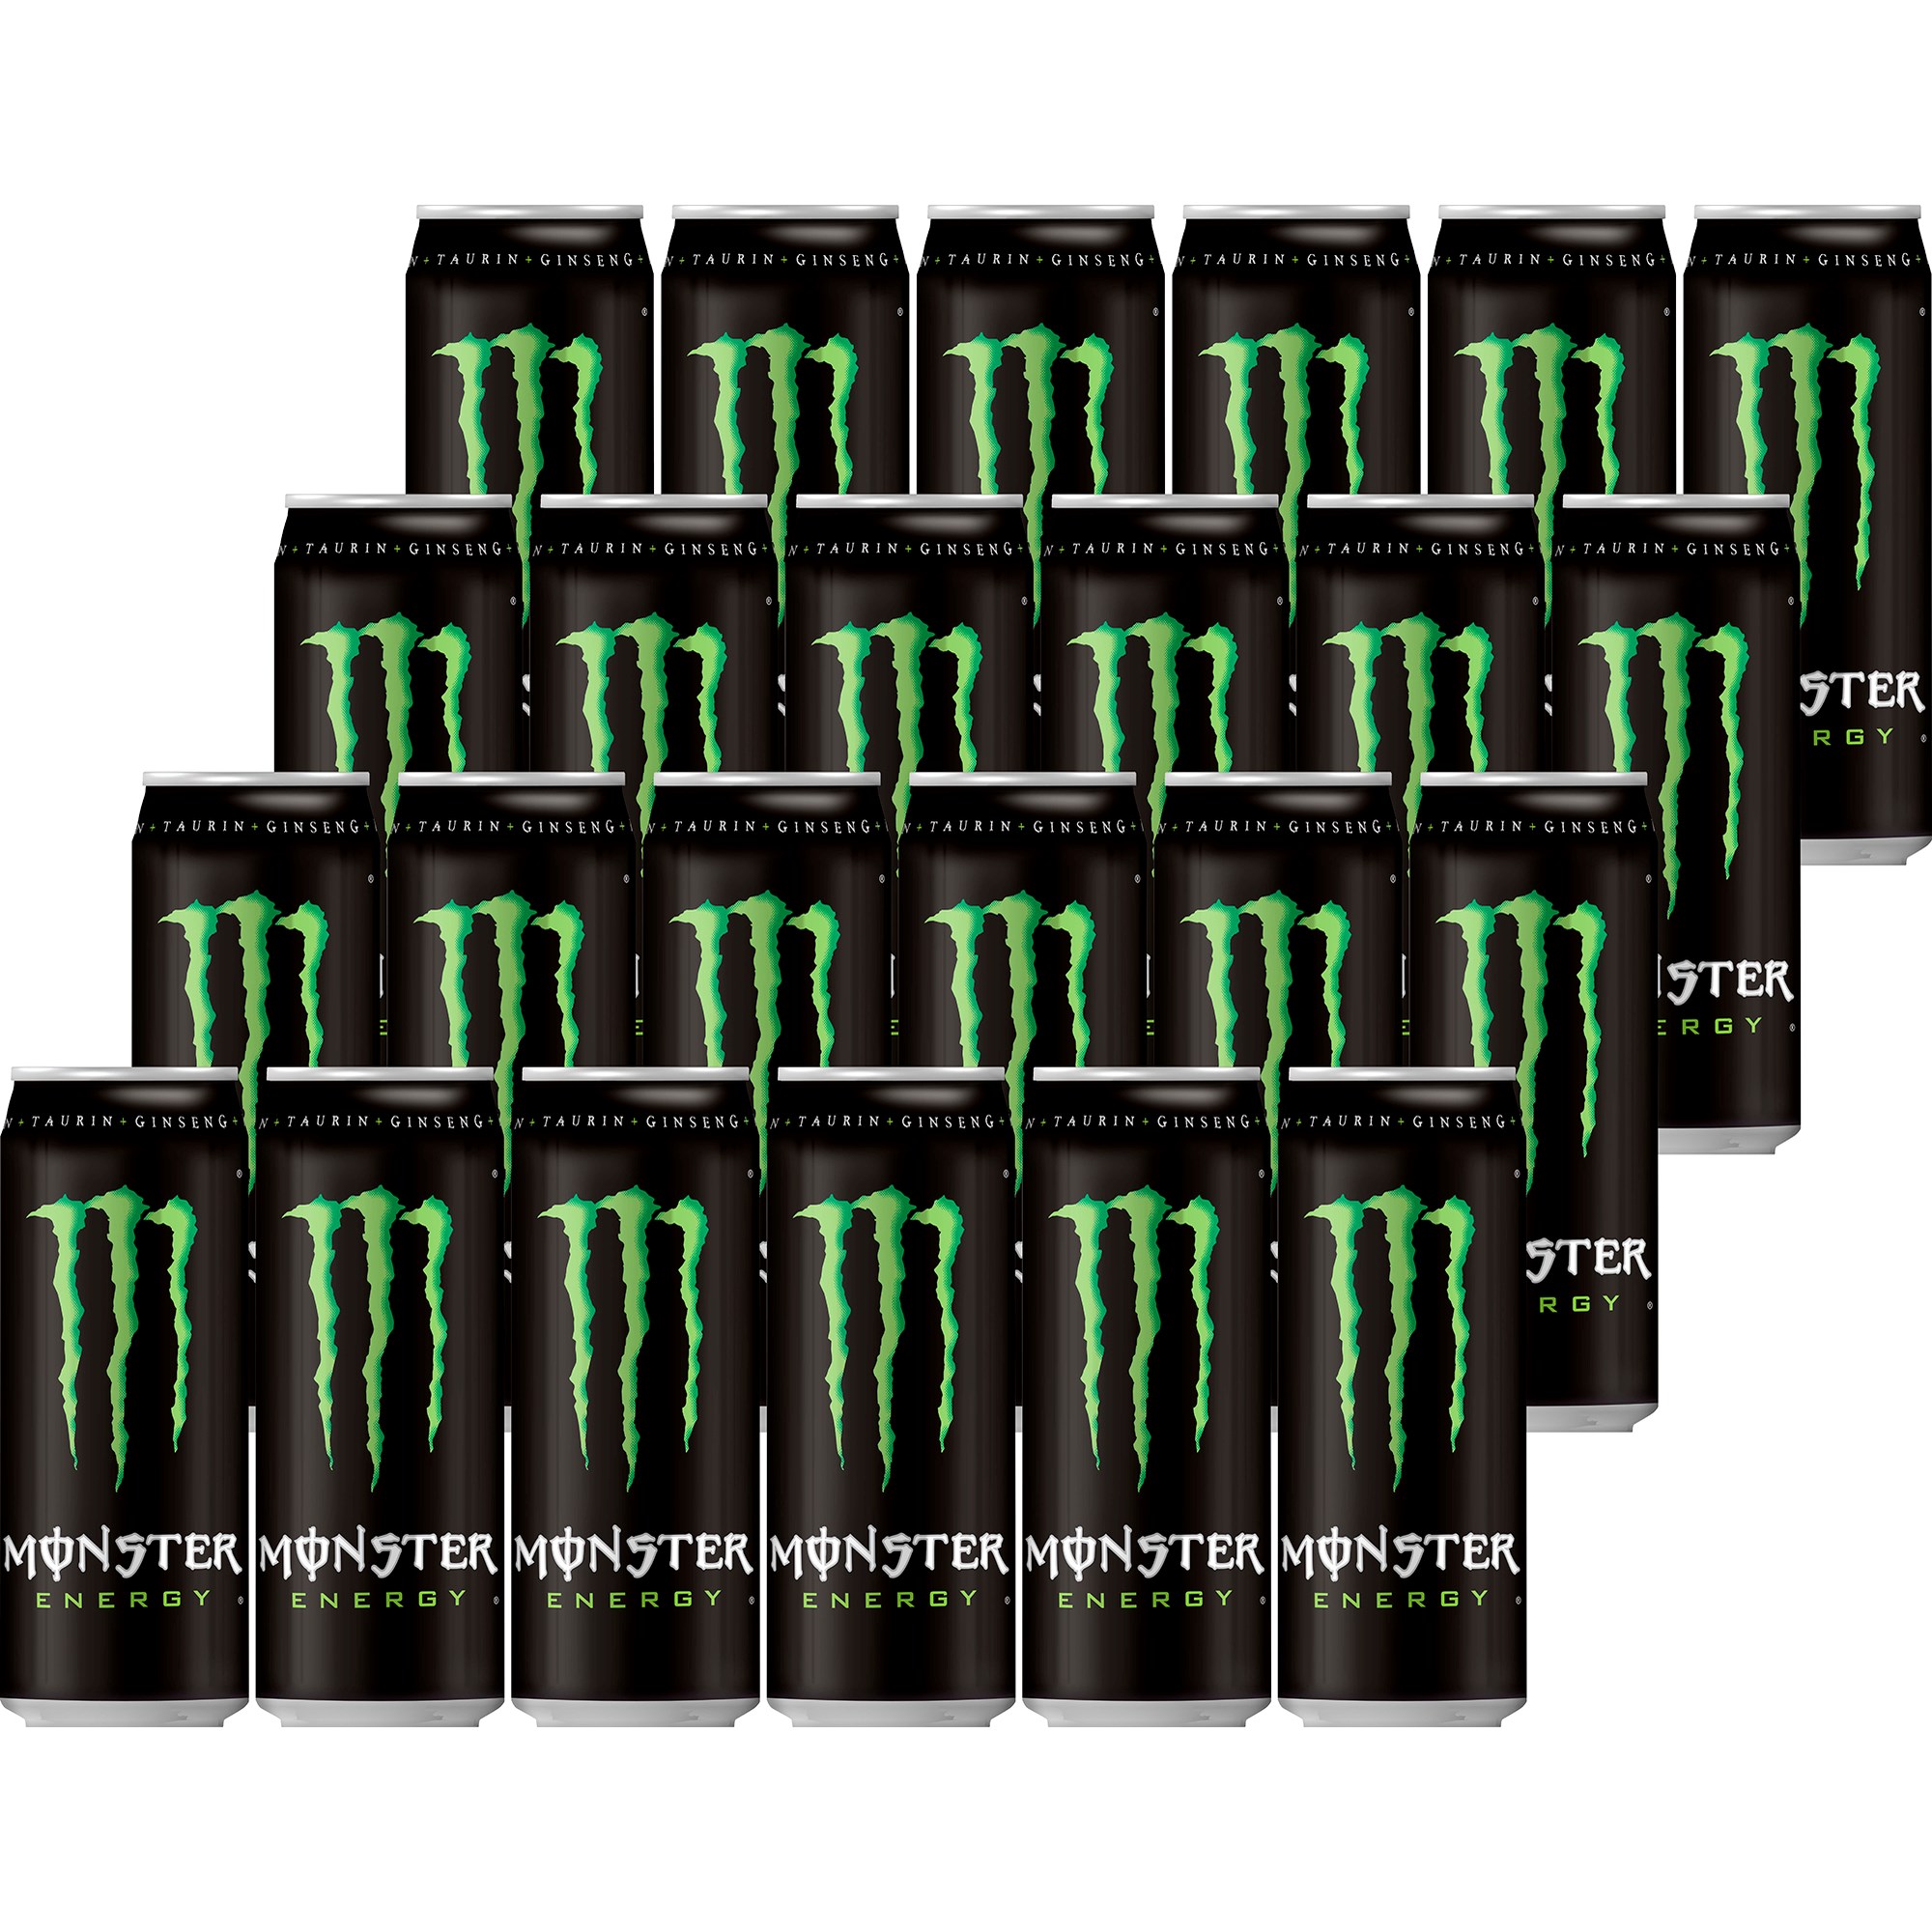 Läs mer om Monster Energy Energy 24 x 50cl